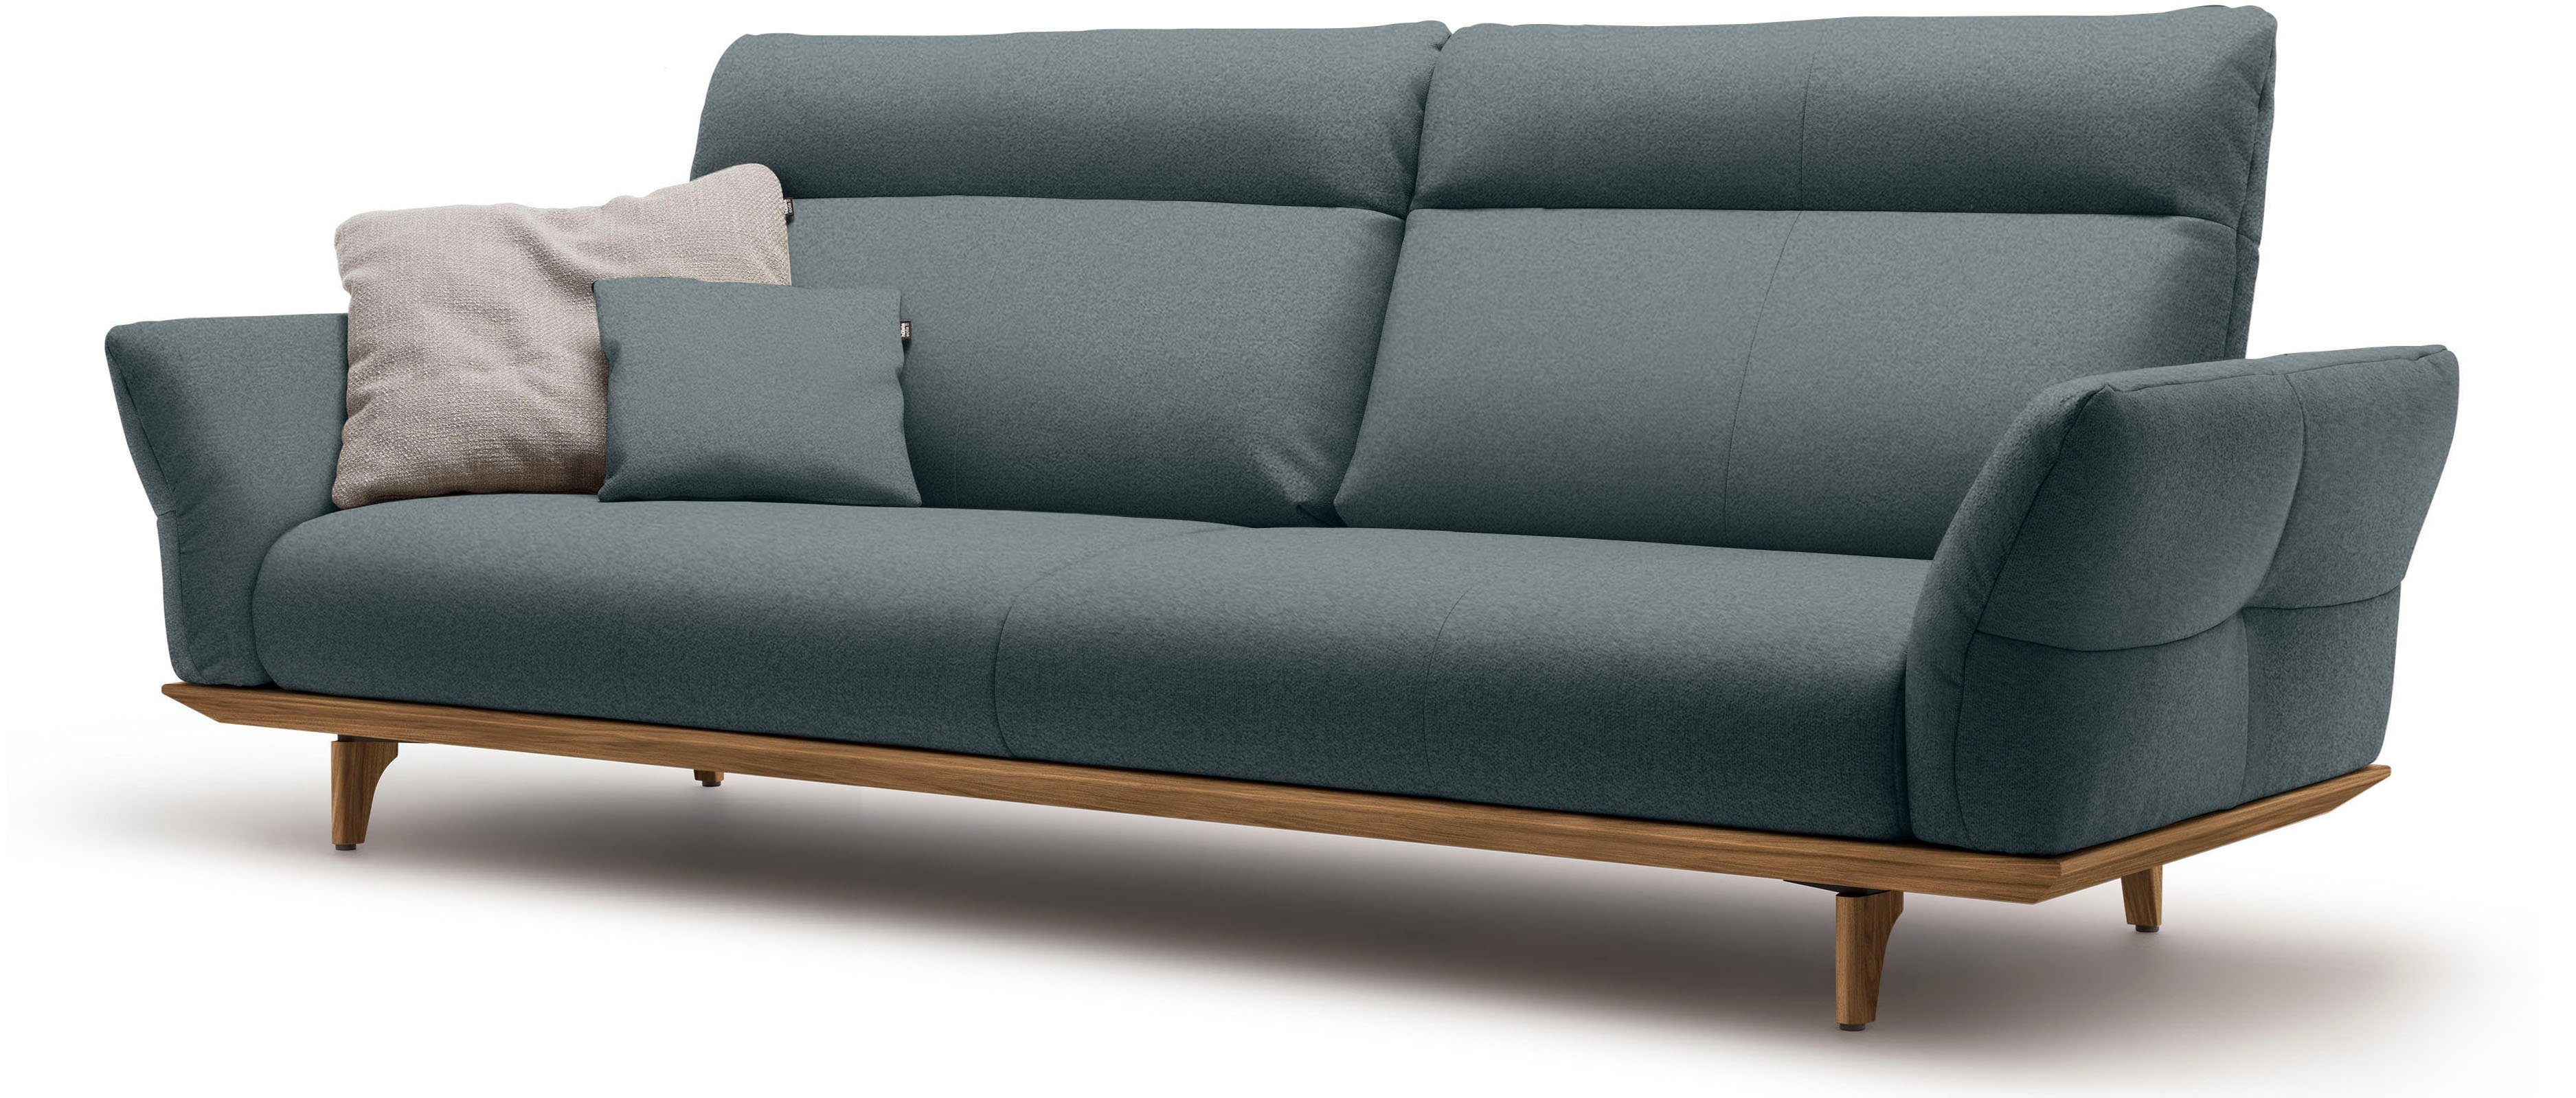 sofa Nussbaum, Füße in 4-Sitzer cm 248 Nussbaum, Sockel hs.460, Breite hülsta